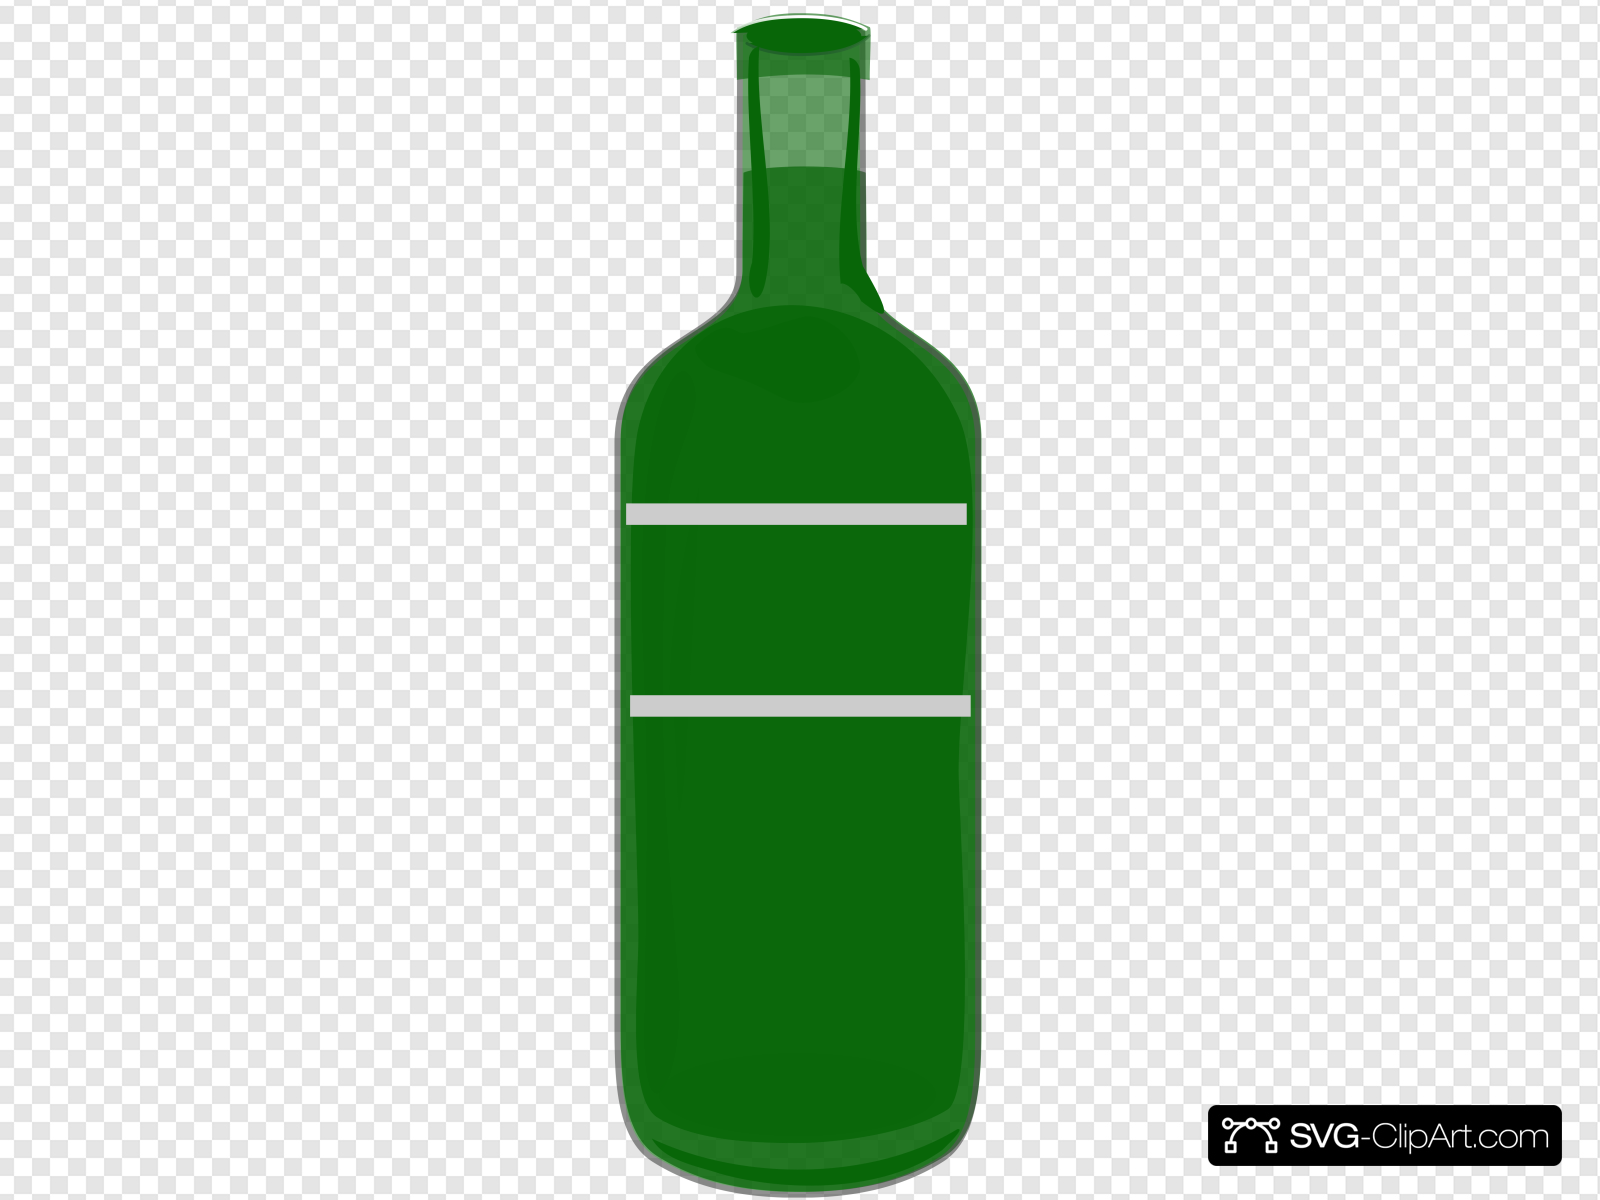 Green wine bottle.